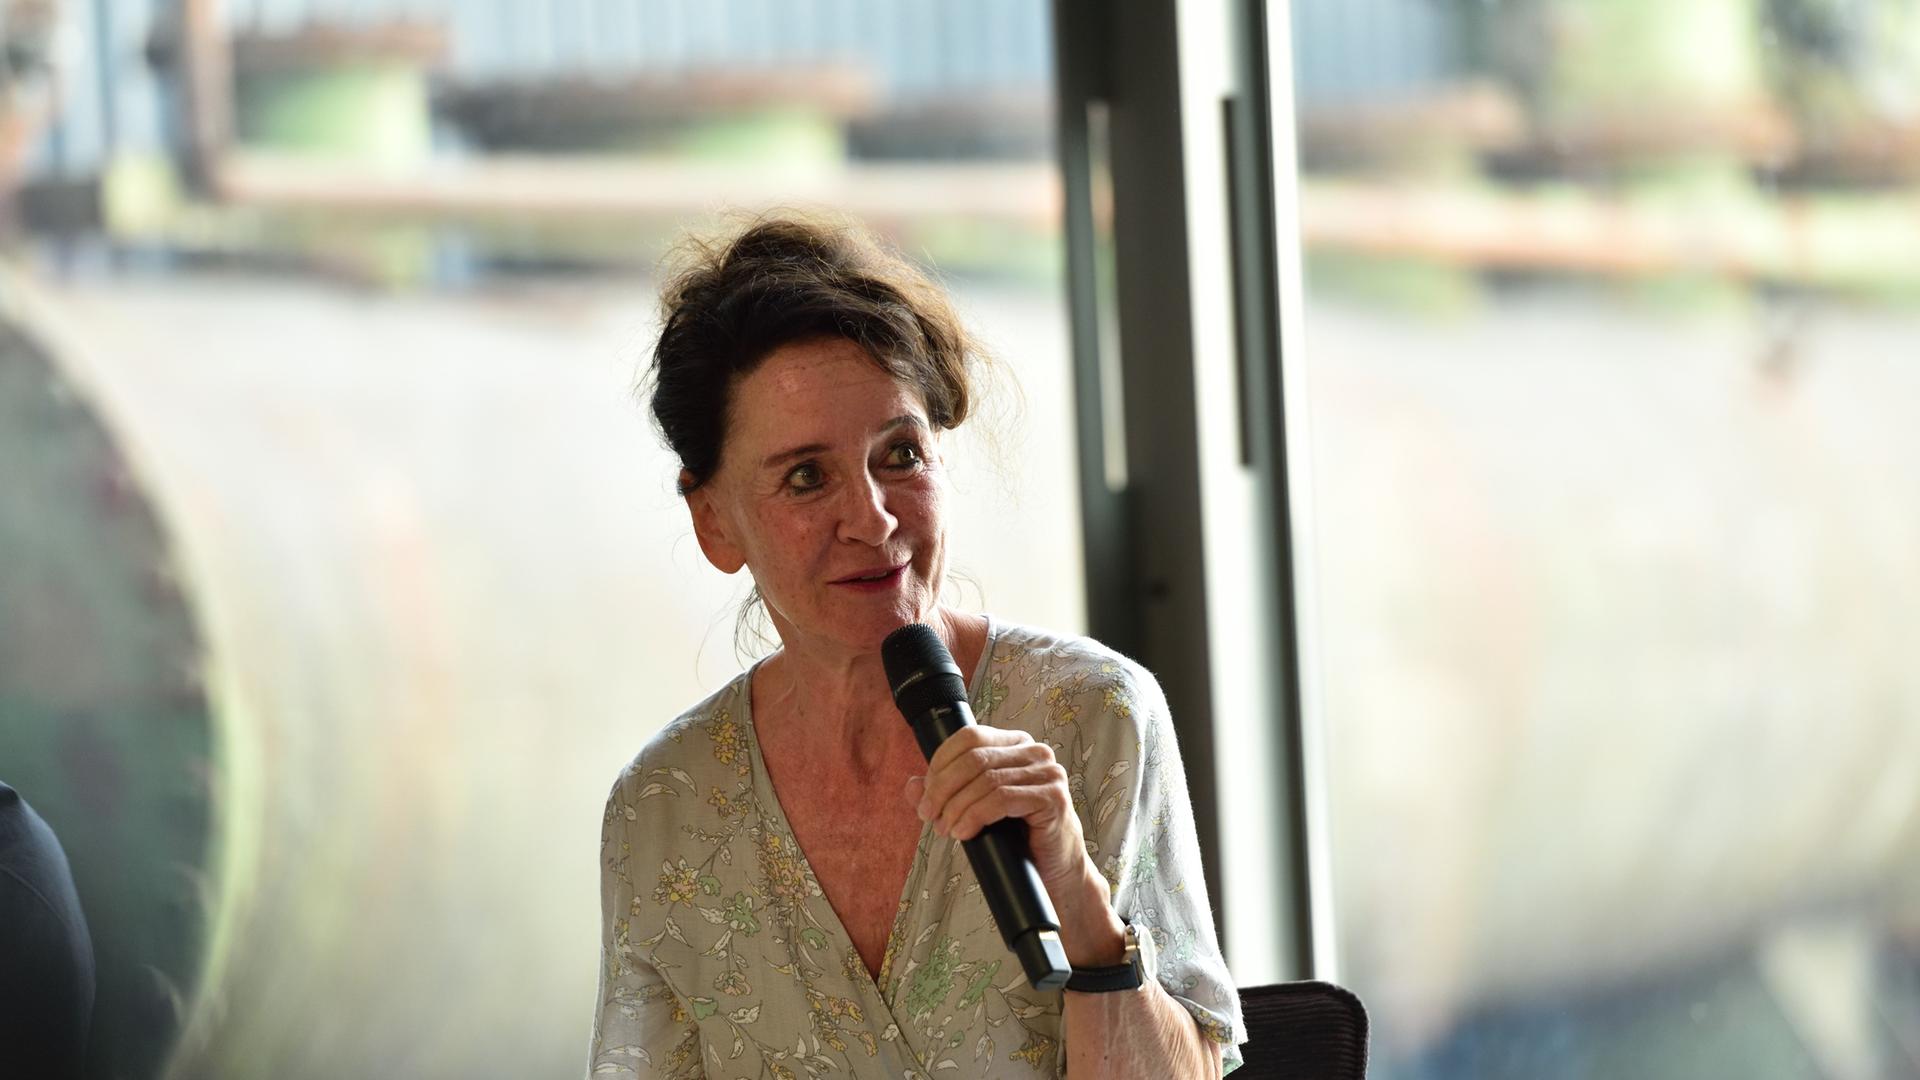 Intendantin Stefanie Carp bei der Auftakt-Pressekonferenz der Ruhrtriennale 2018 im Dampfgebläsehaus, Jahrhunderthalle Bochum, 1. August 2018